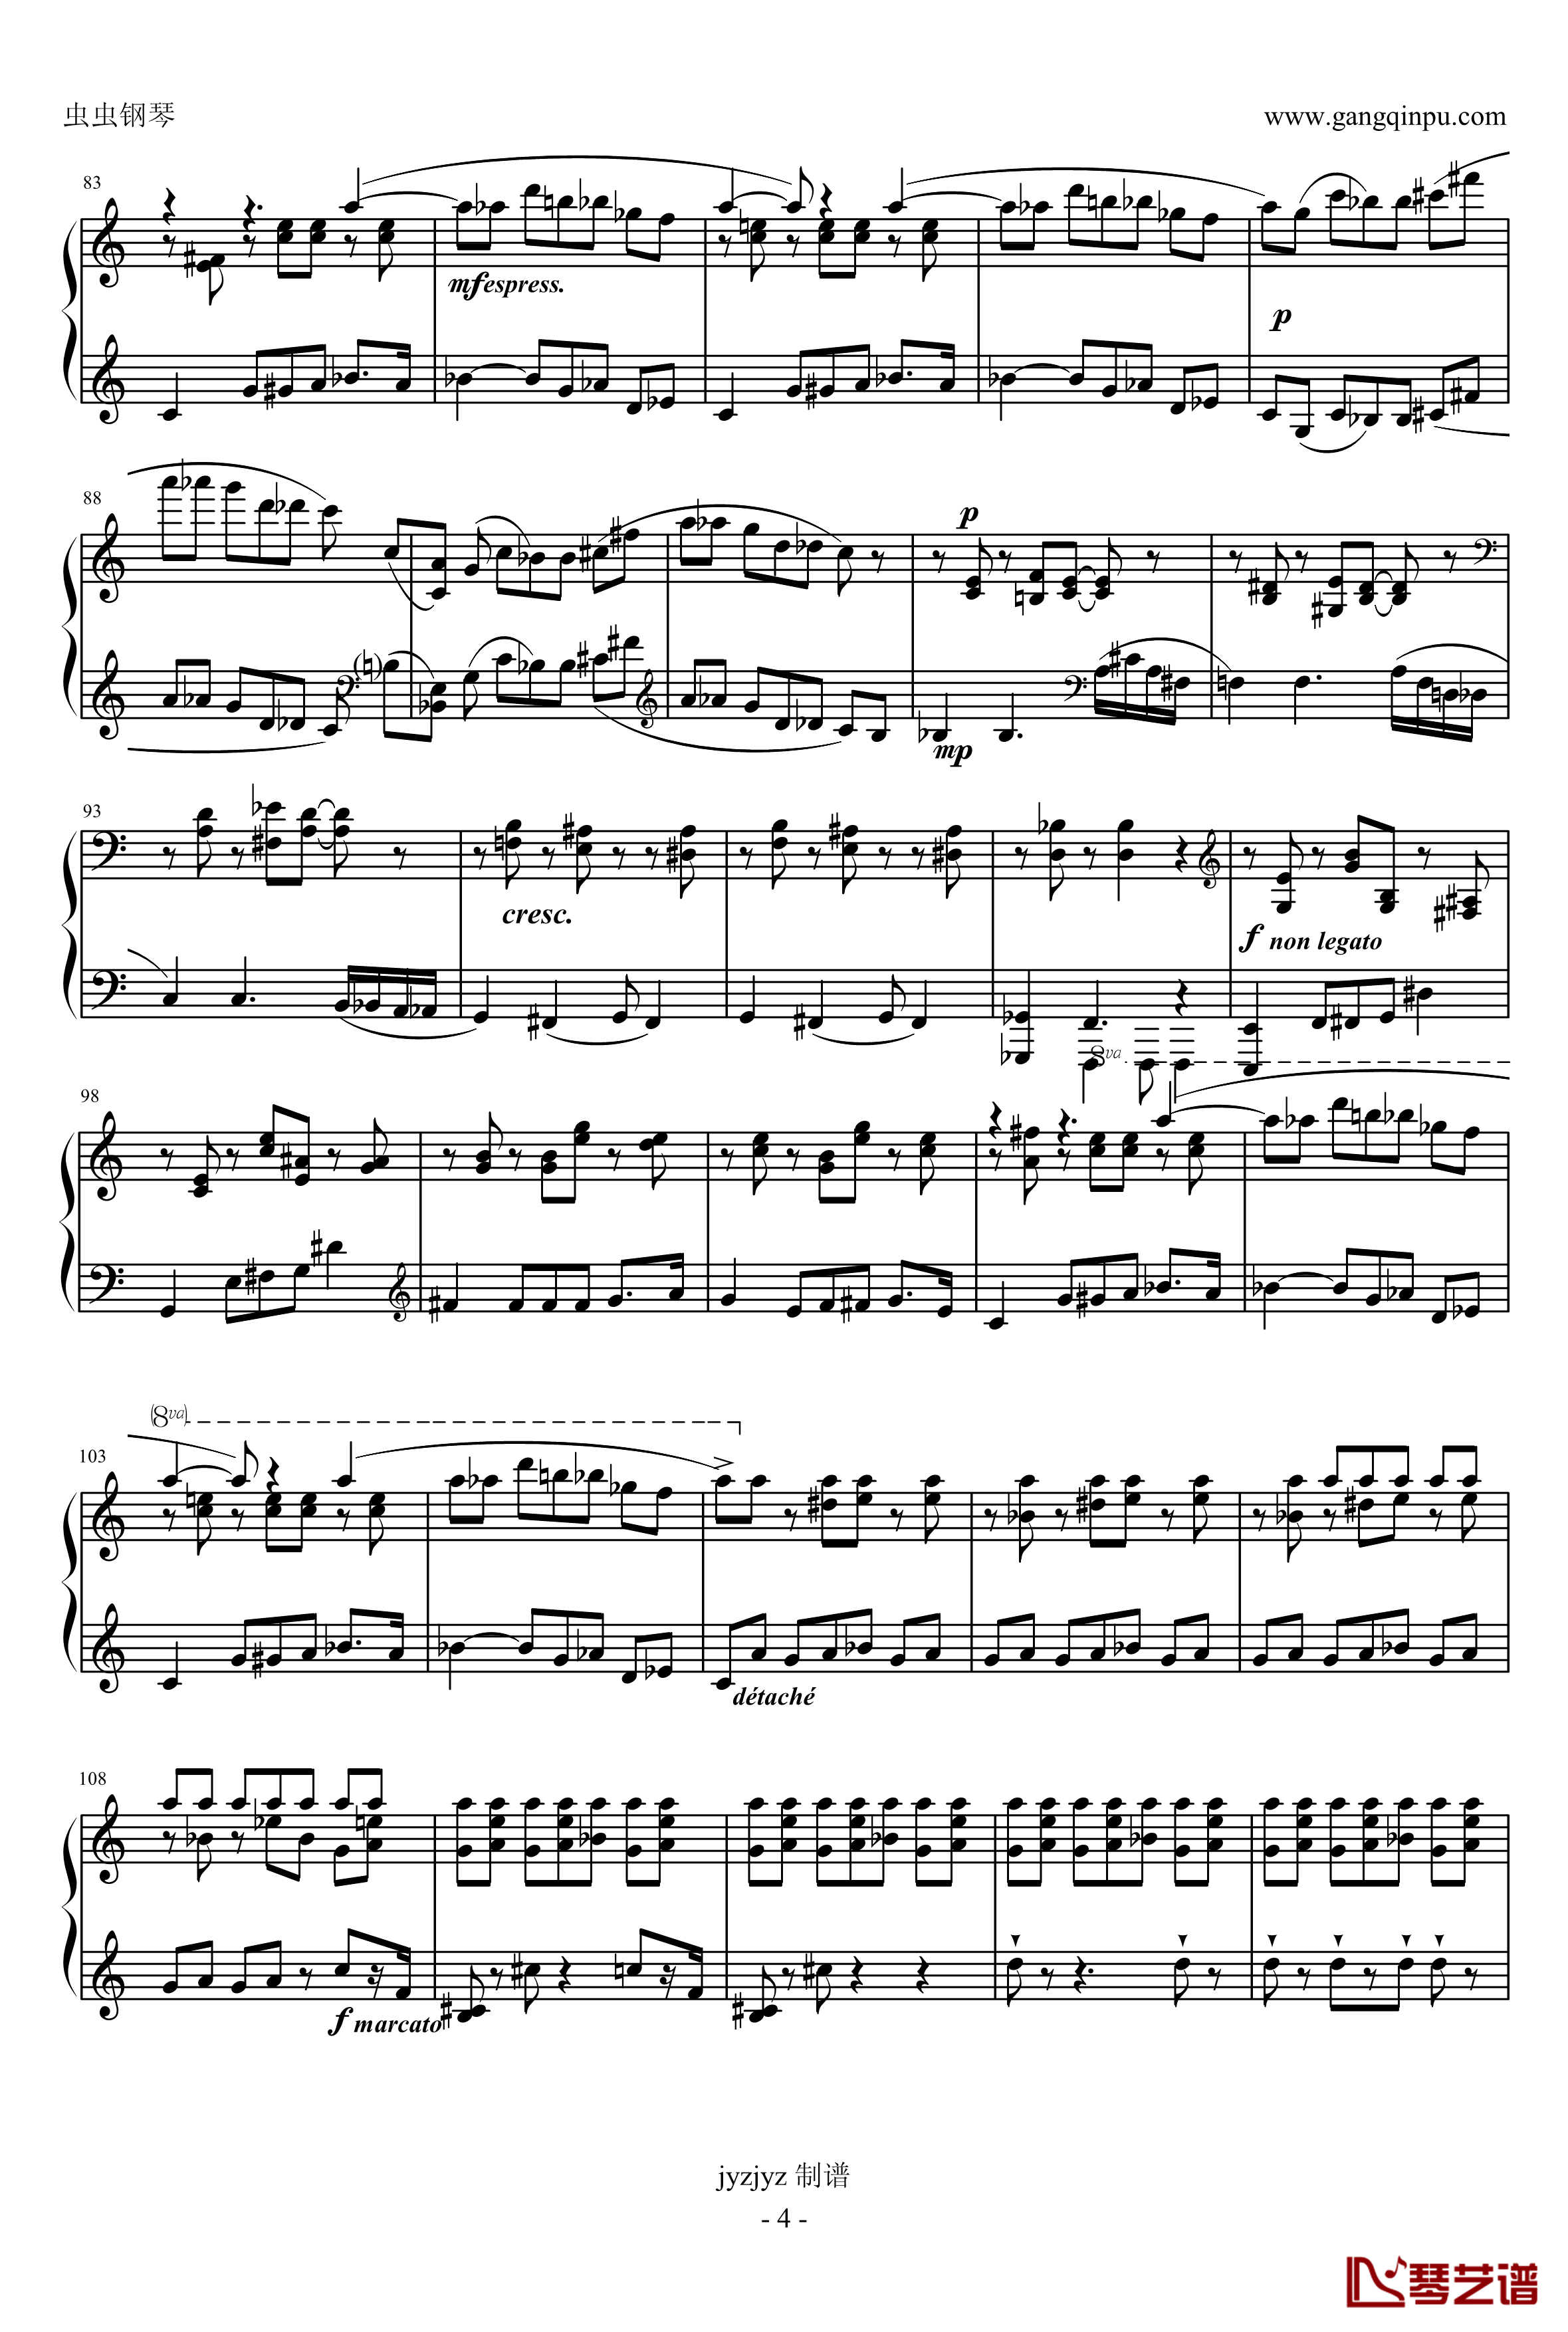 普罗科耶夫第7号钢琴奏鸣曲第3乐章钢琴谱-普罗科非耶夫4